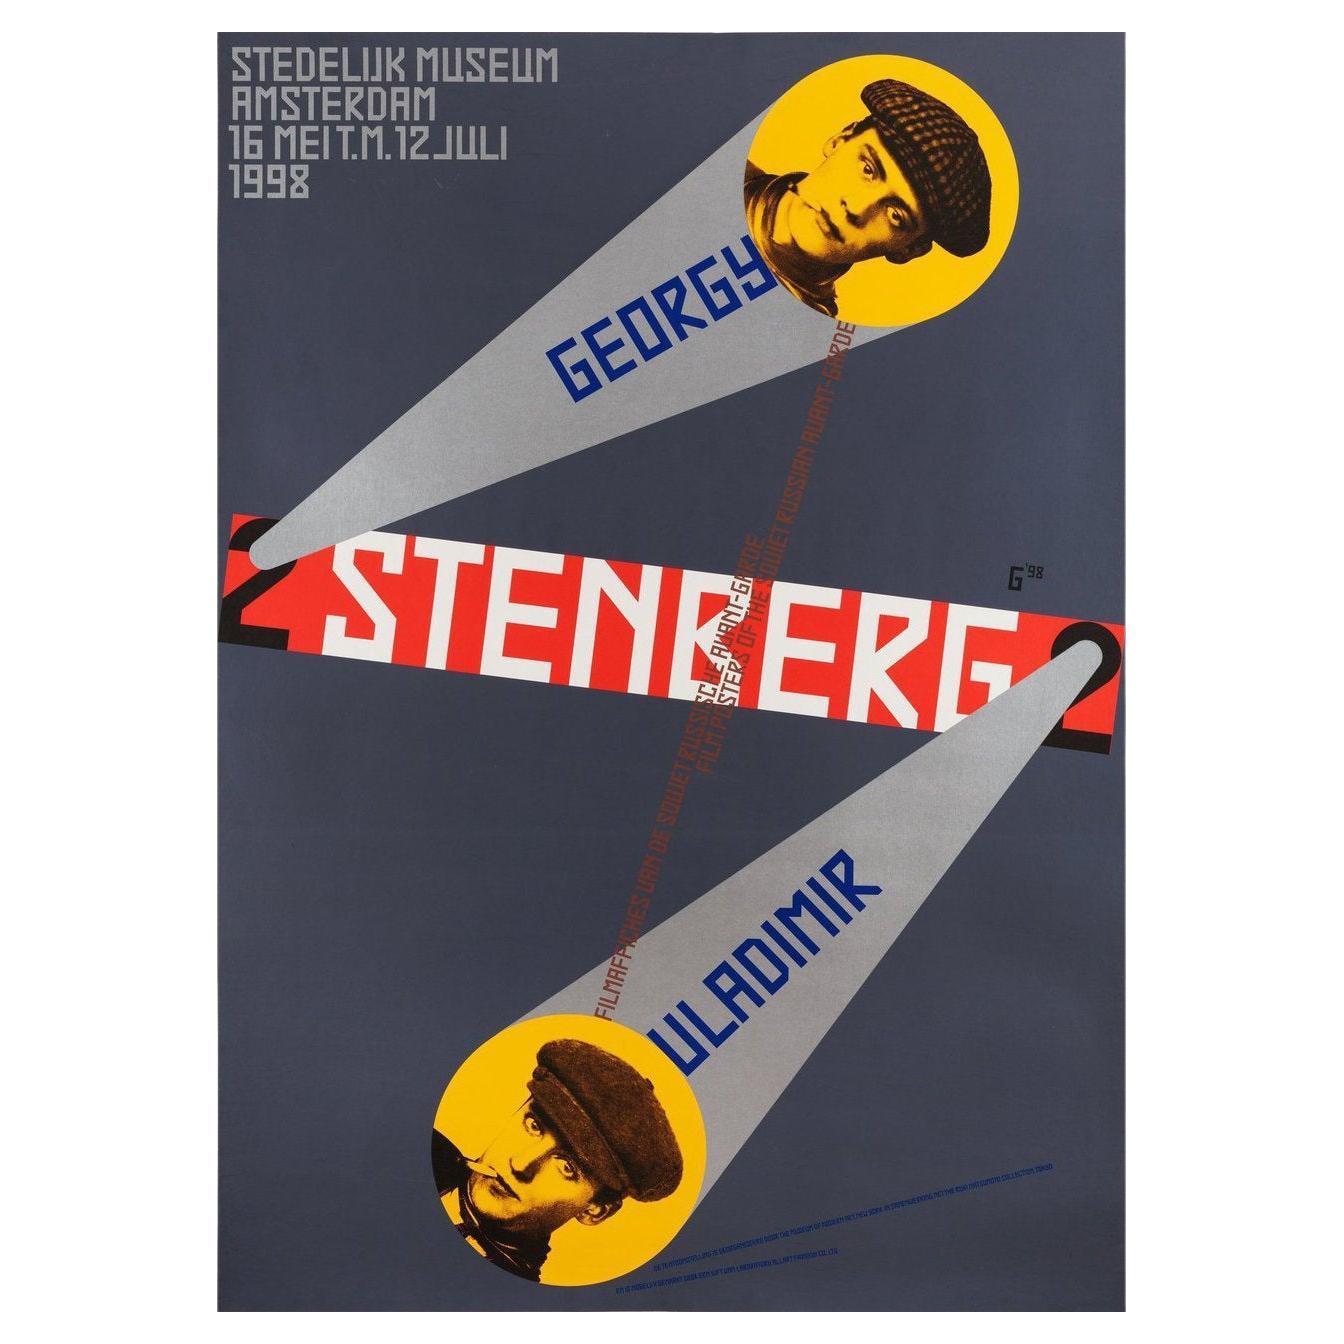 Filmaffiches Van Gregory En Vladamir Stenberg 1998 Swiss Film Poster